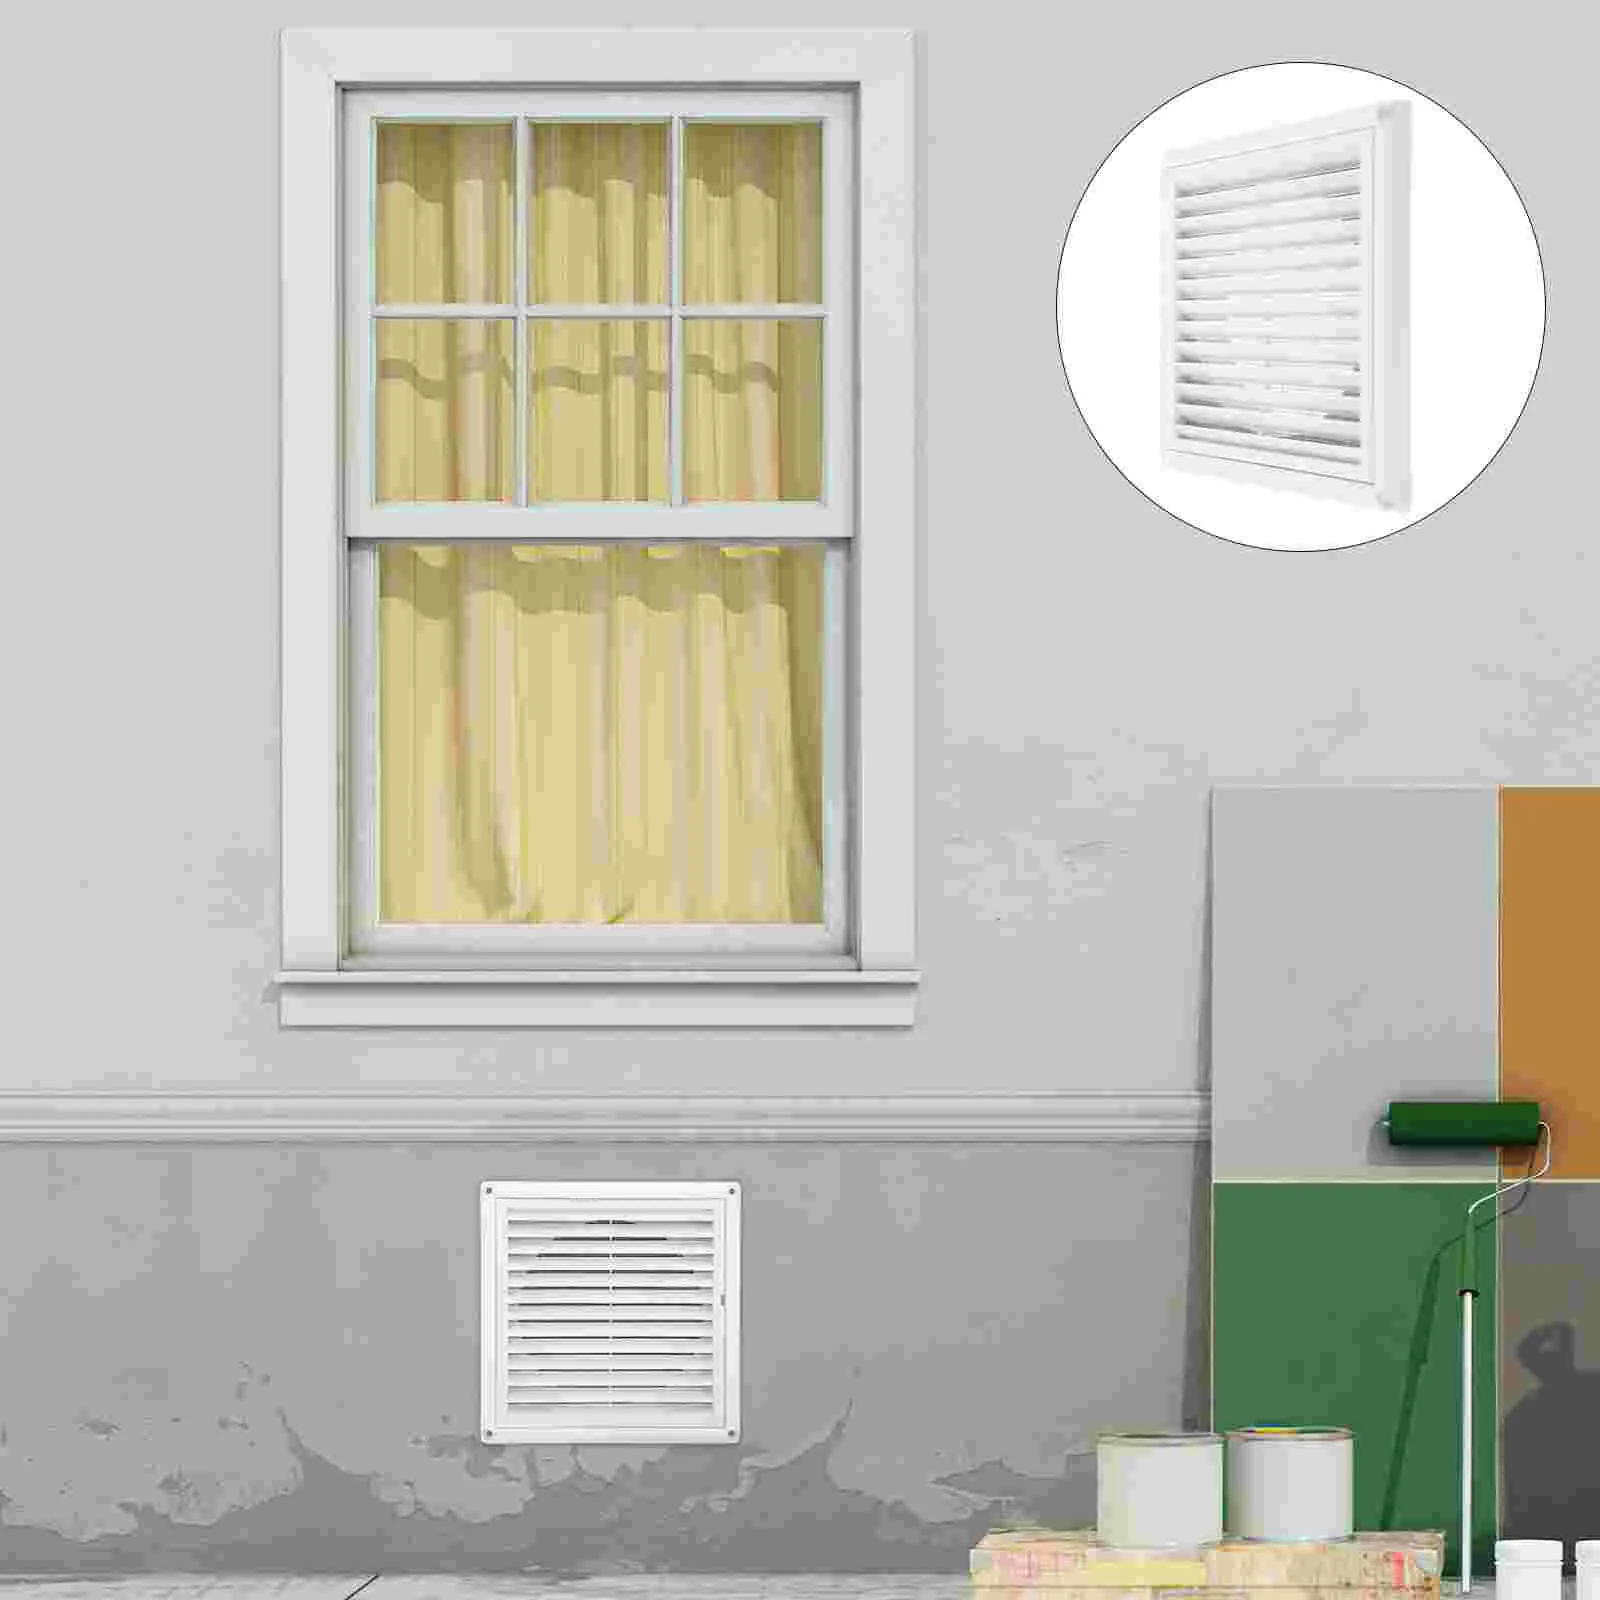 

Регулируемая Крышка для вентиляционного отверстия кондиционера, аксессуар, пластиковая Бытовая потолочная решетка для стены